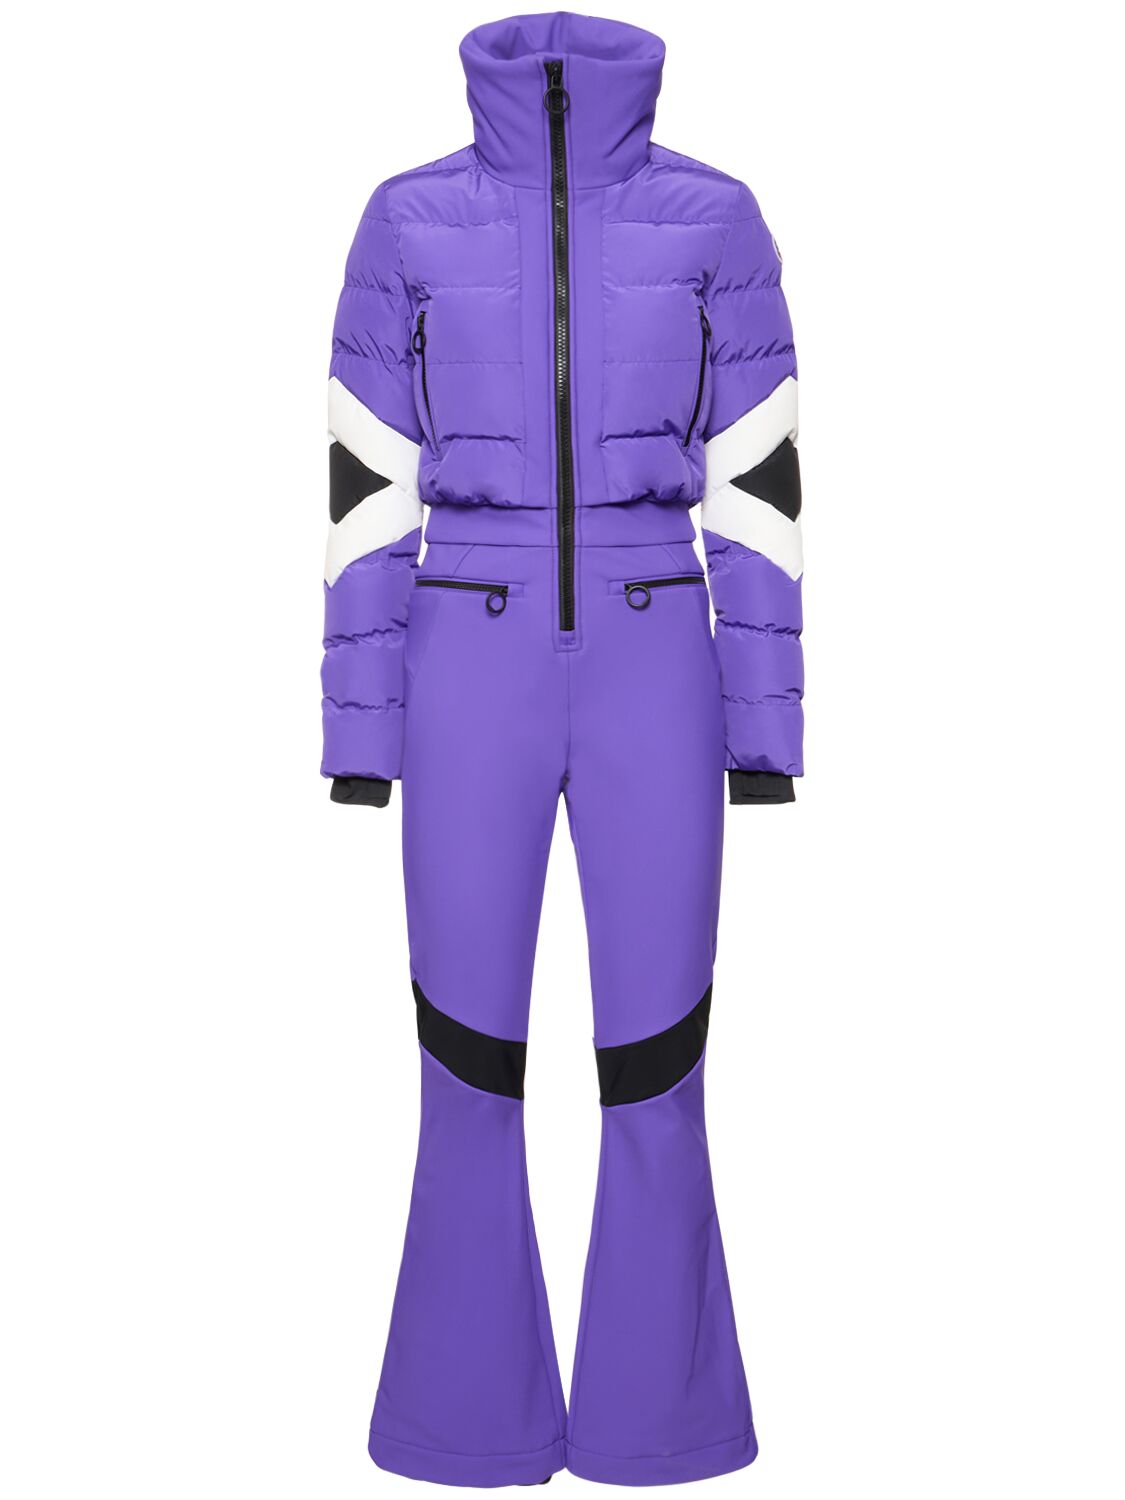 FUSALP CLARISSE科技织物滑雪连身裤